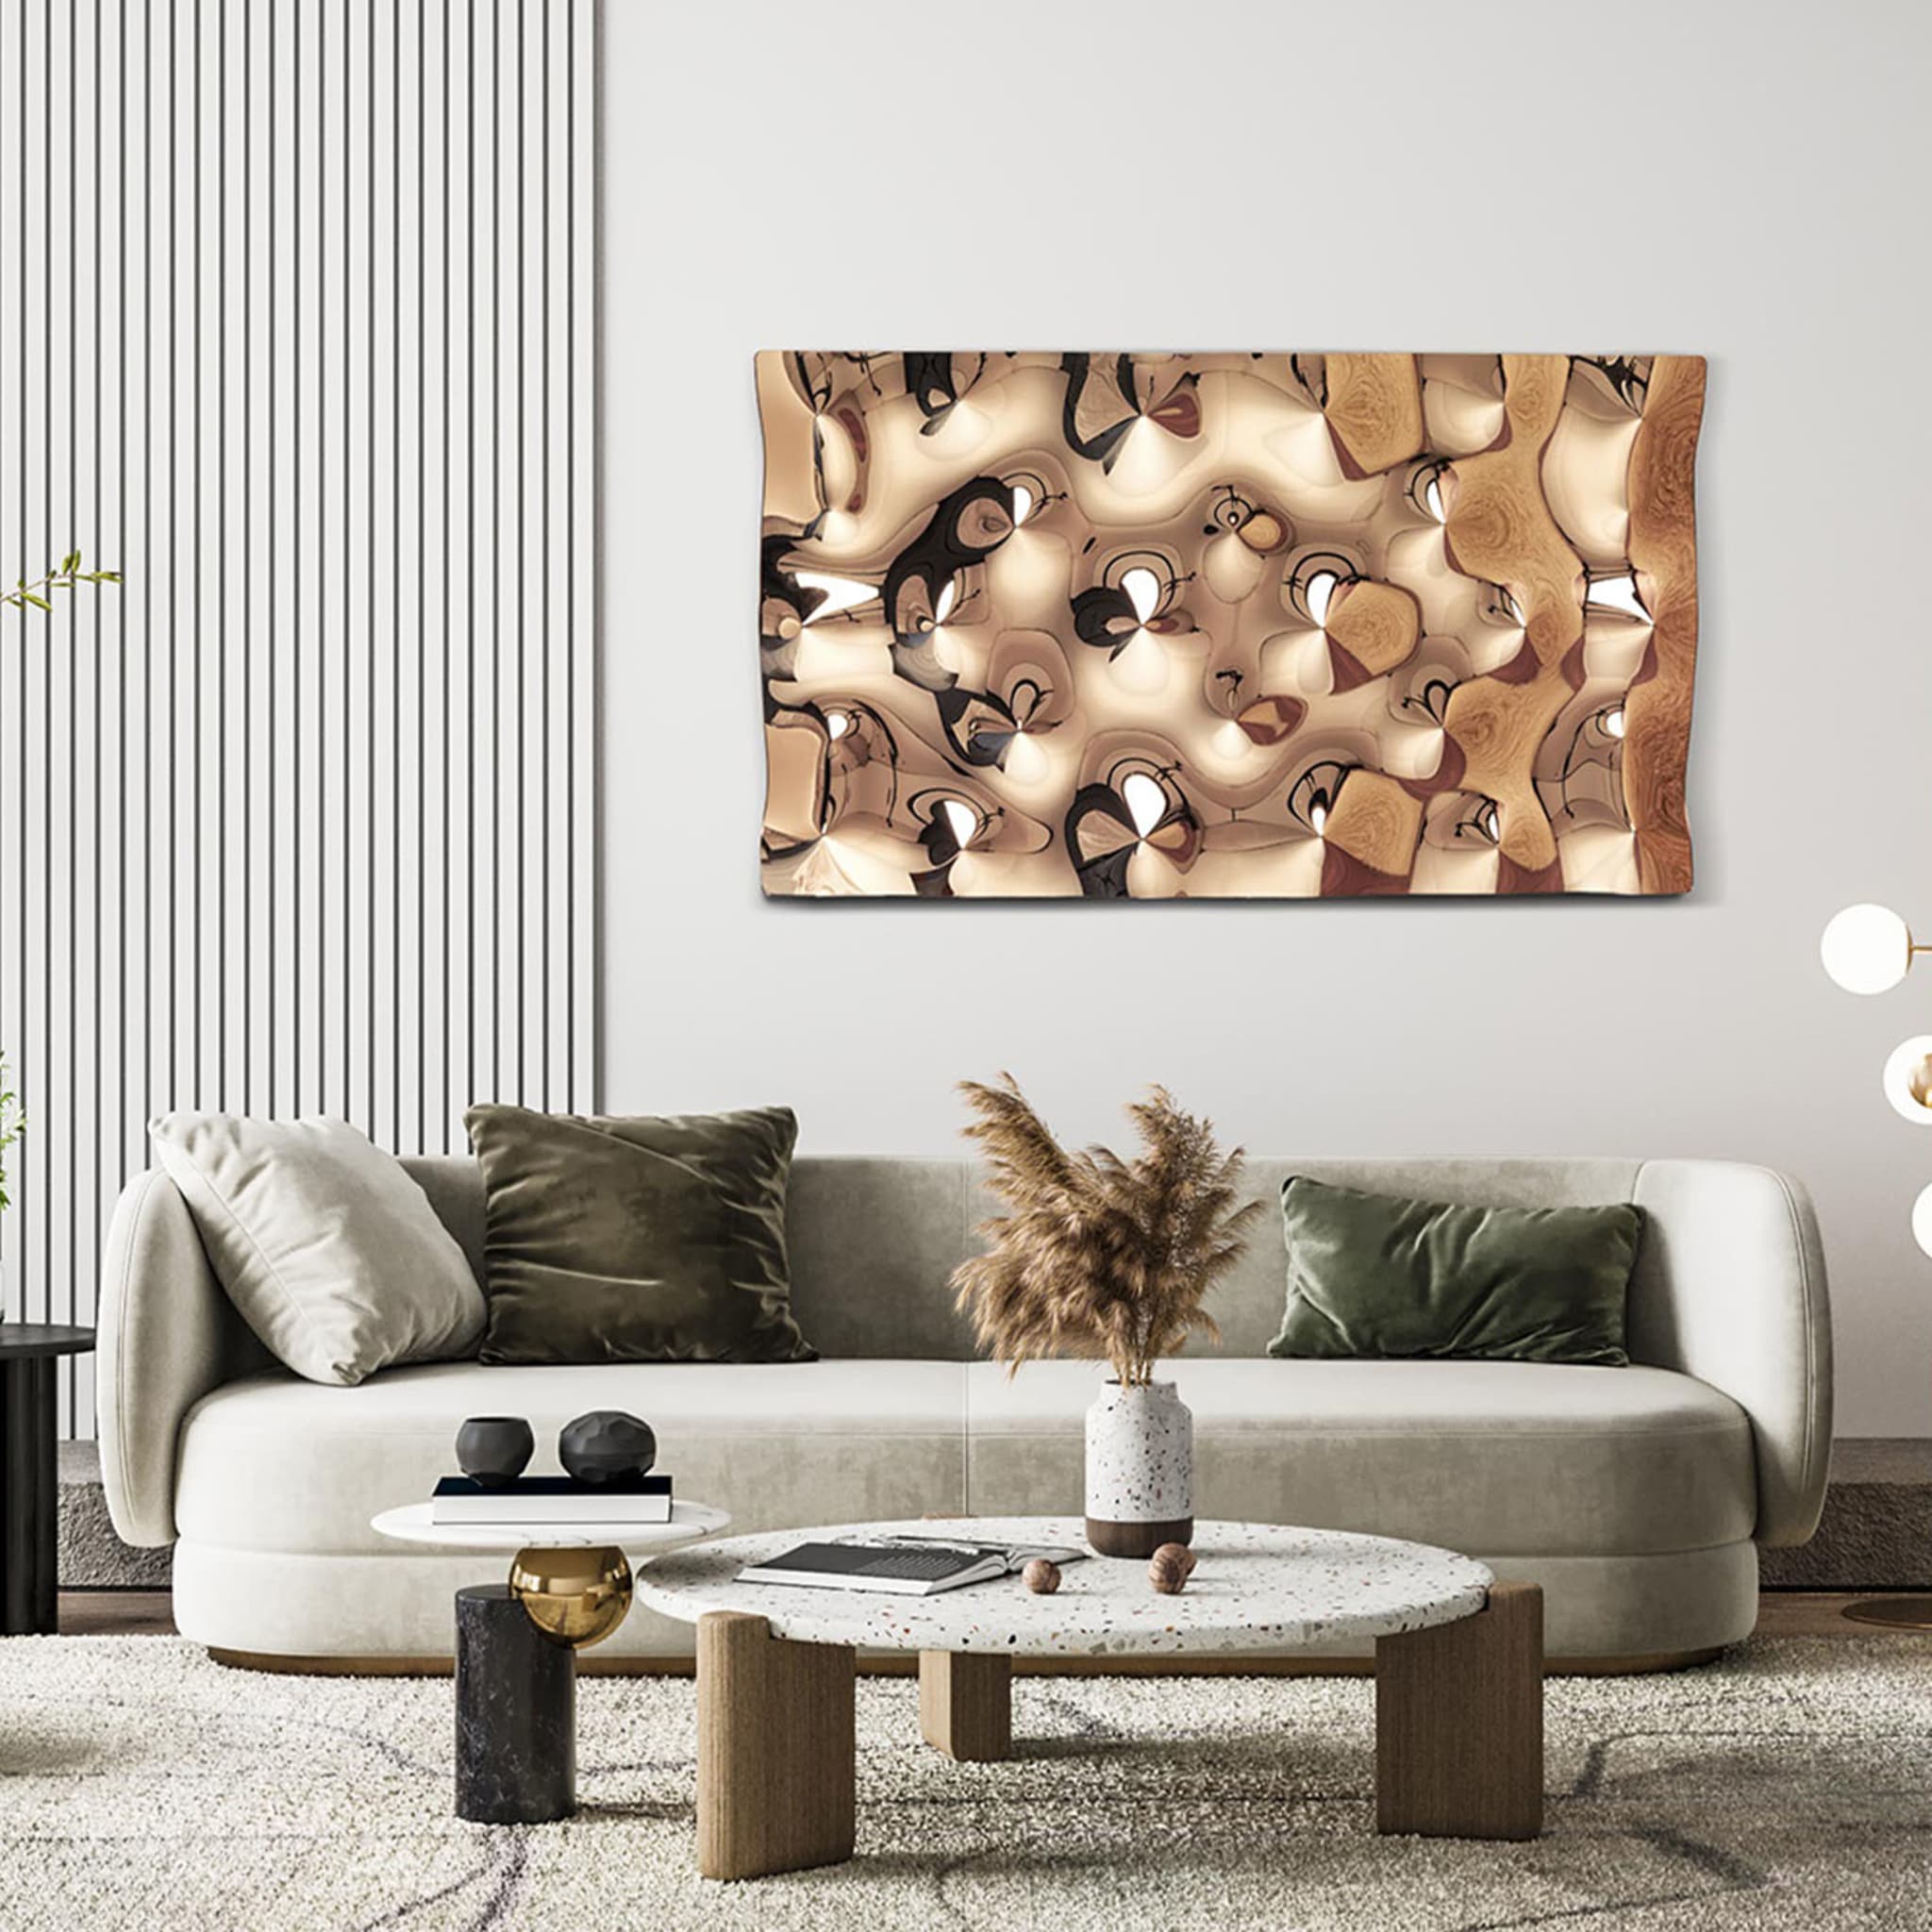 Rialto Copper Decorative Wall Panel - Alternative view 1